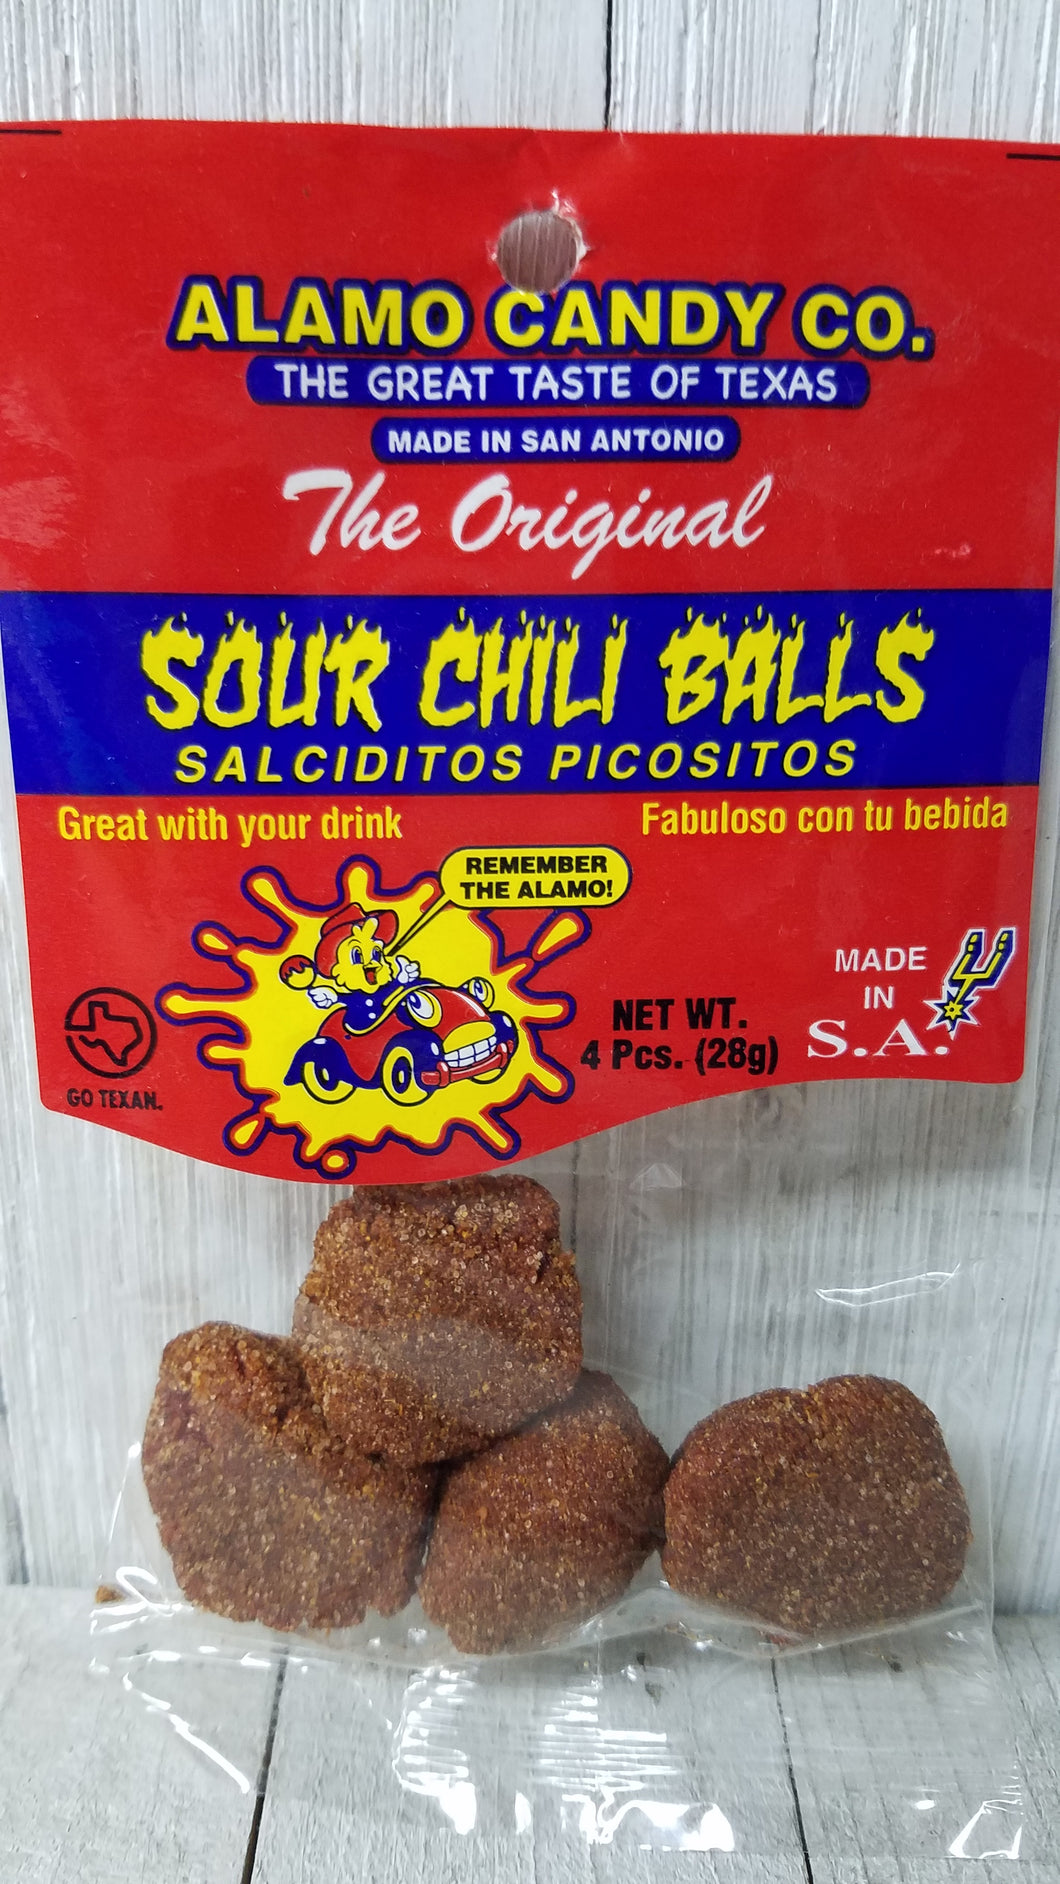 Sour Chili Balls